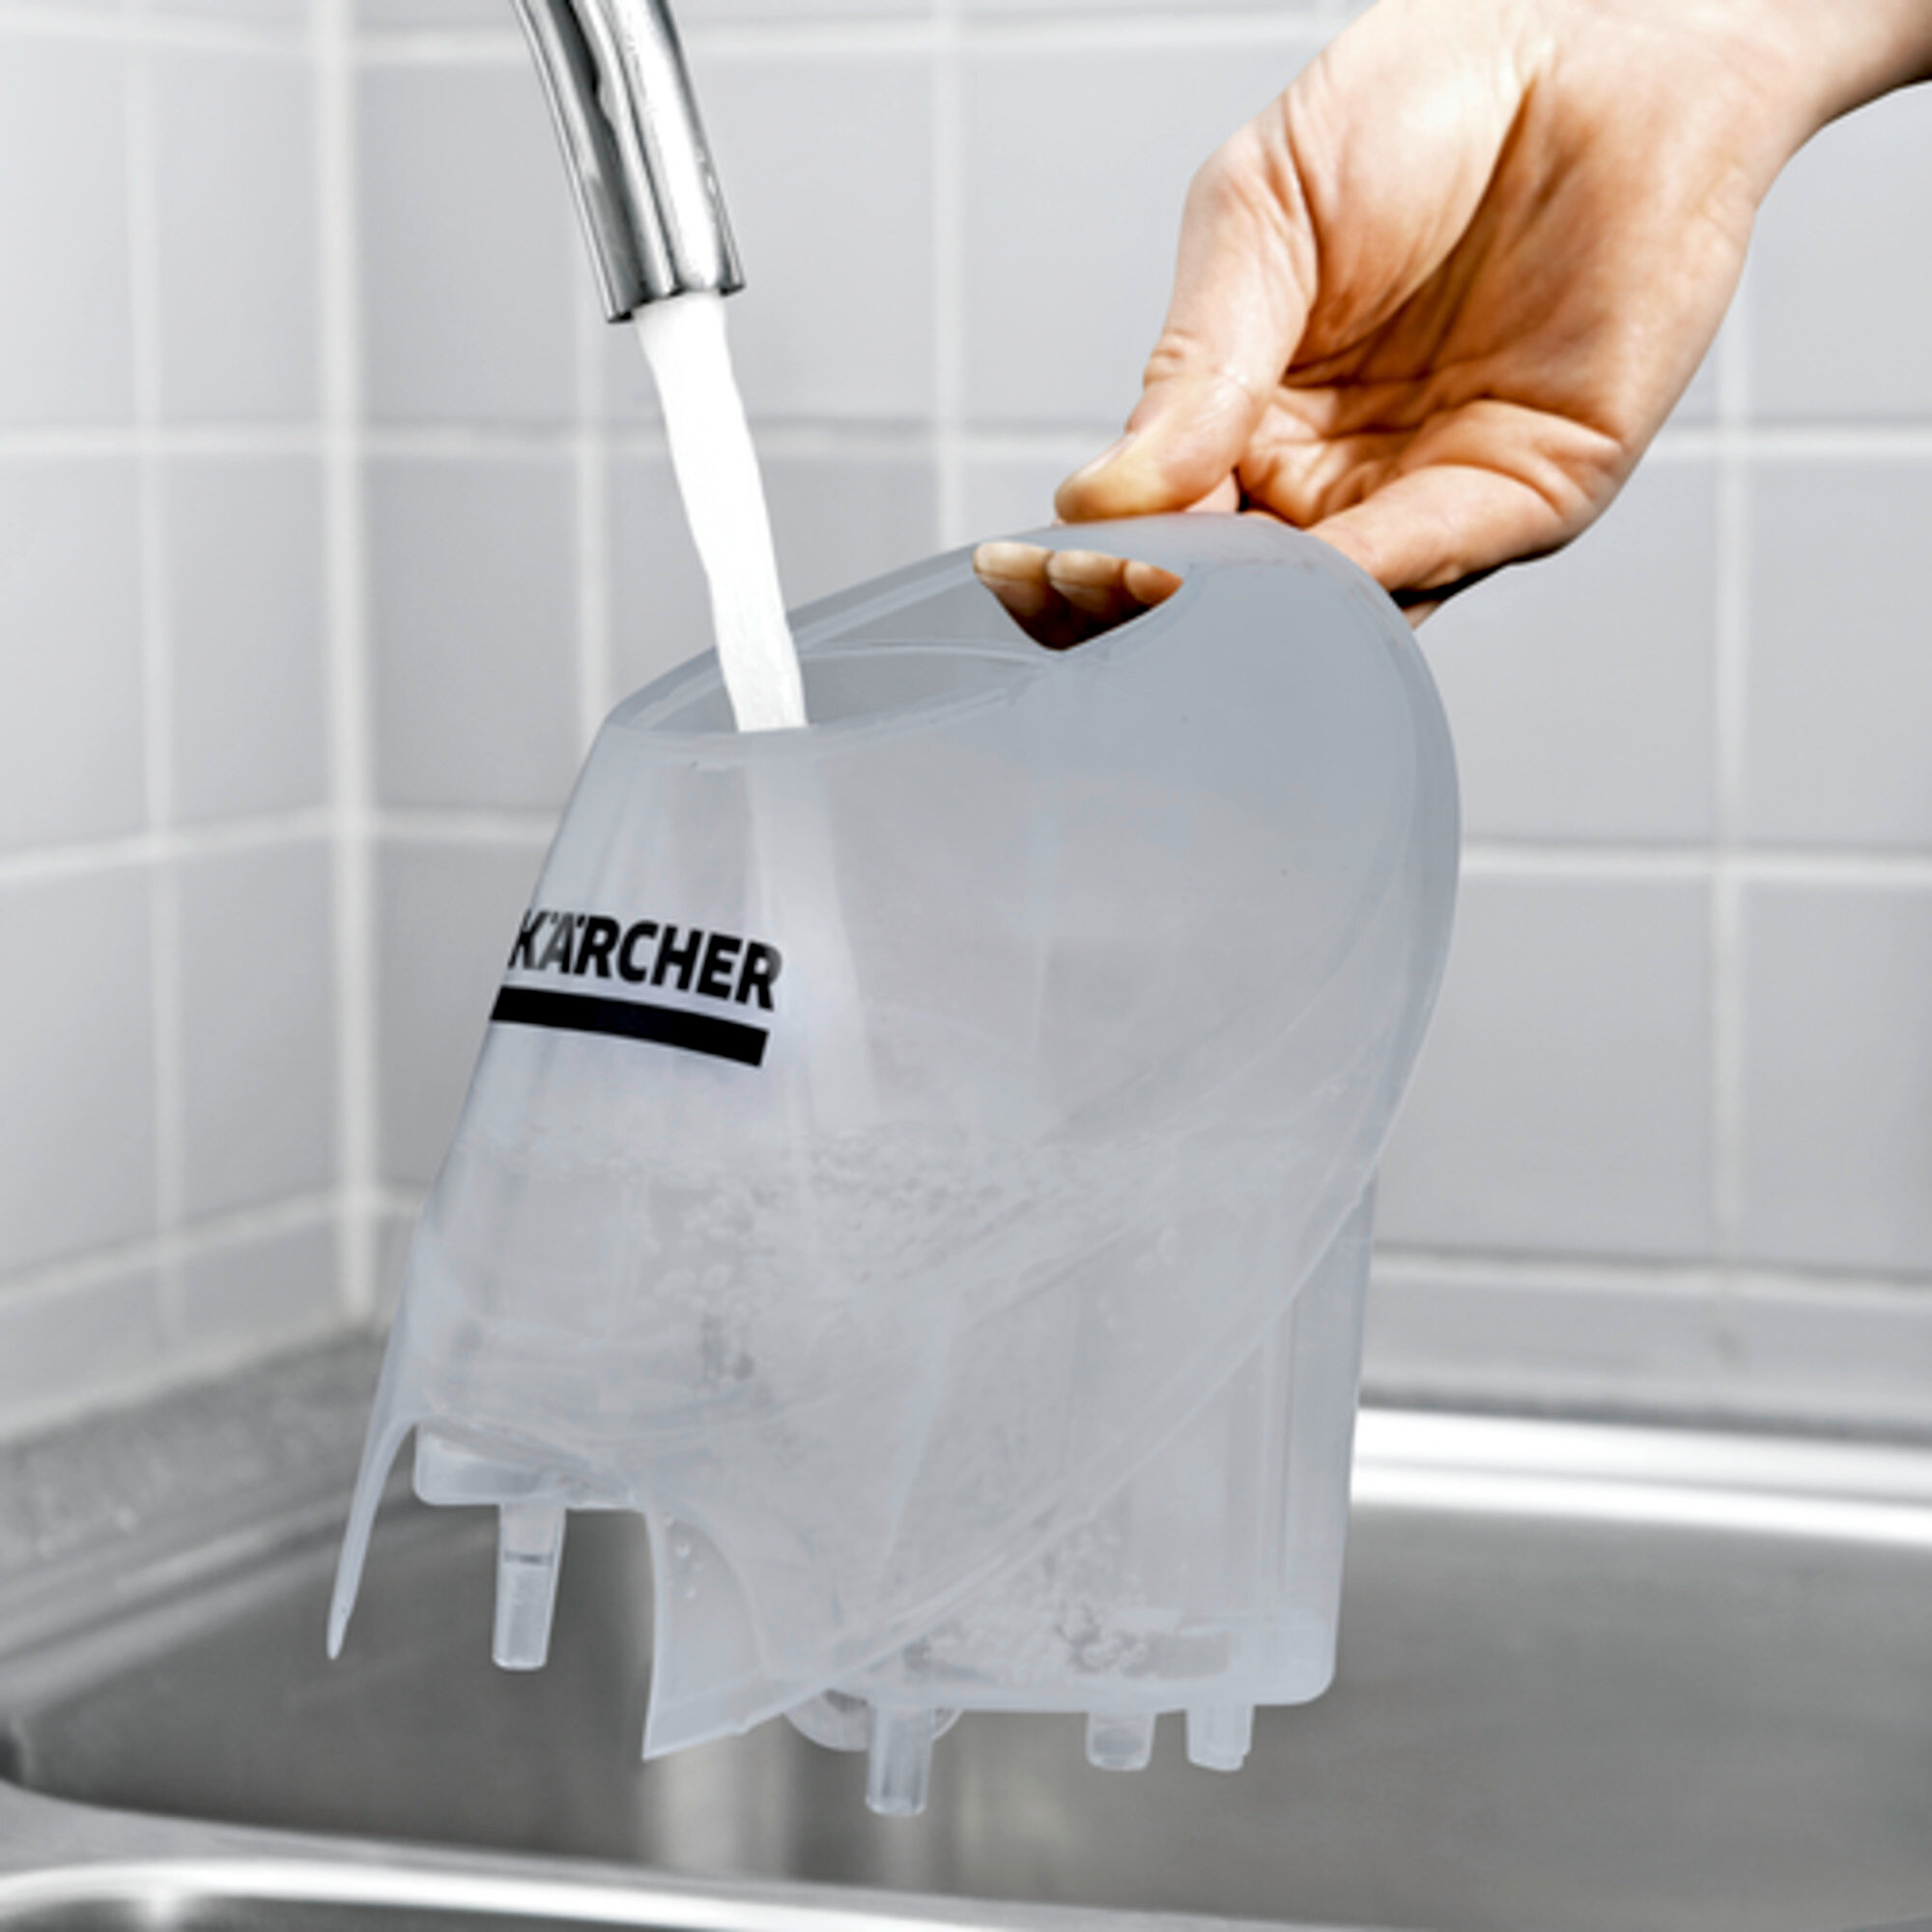 Parni čistilnik SC 4 EasyFix: Snemljiv rezervoar za vodo, ki se nenehno polni